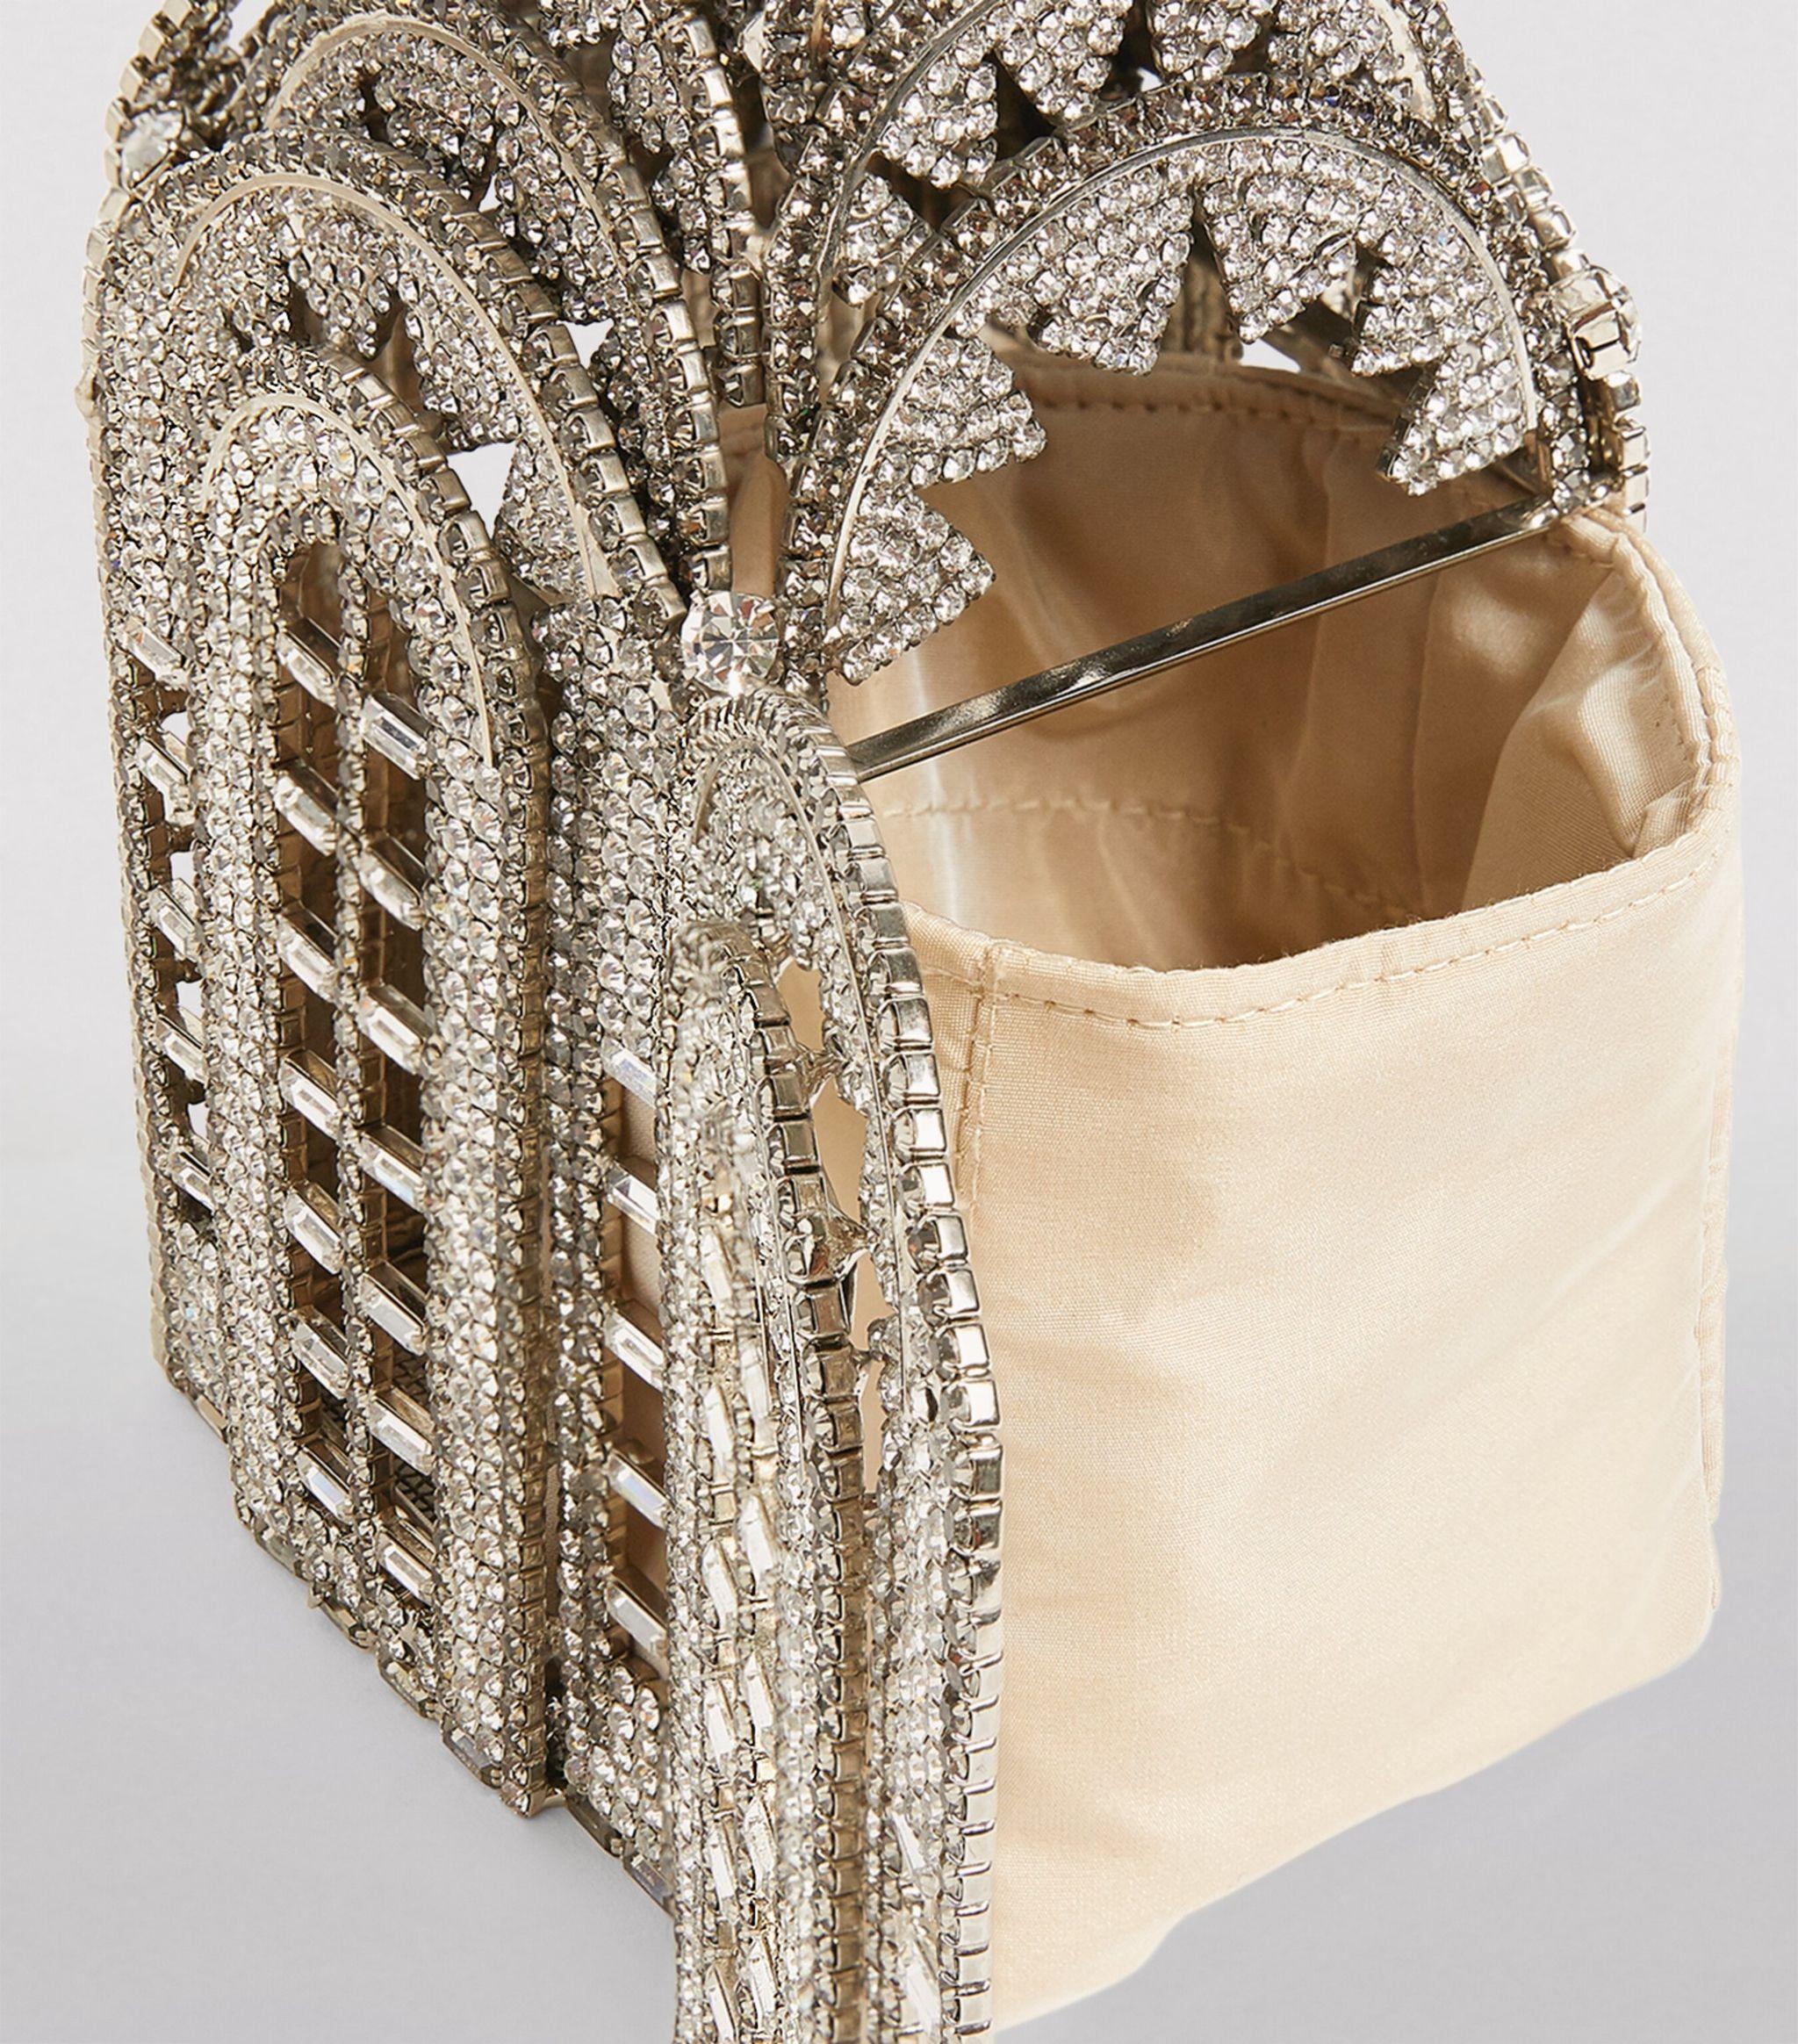 Rosantica Crystal-embellished Chrysler Building Bag in Metallic